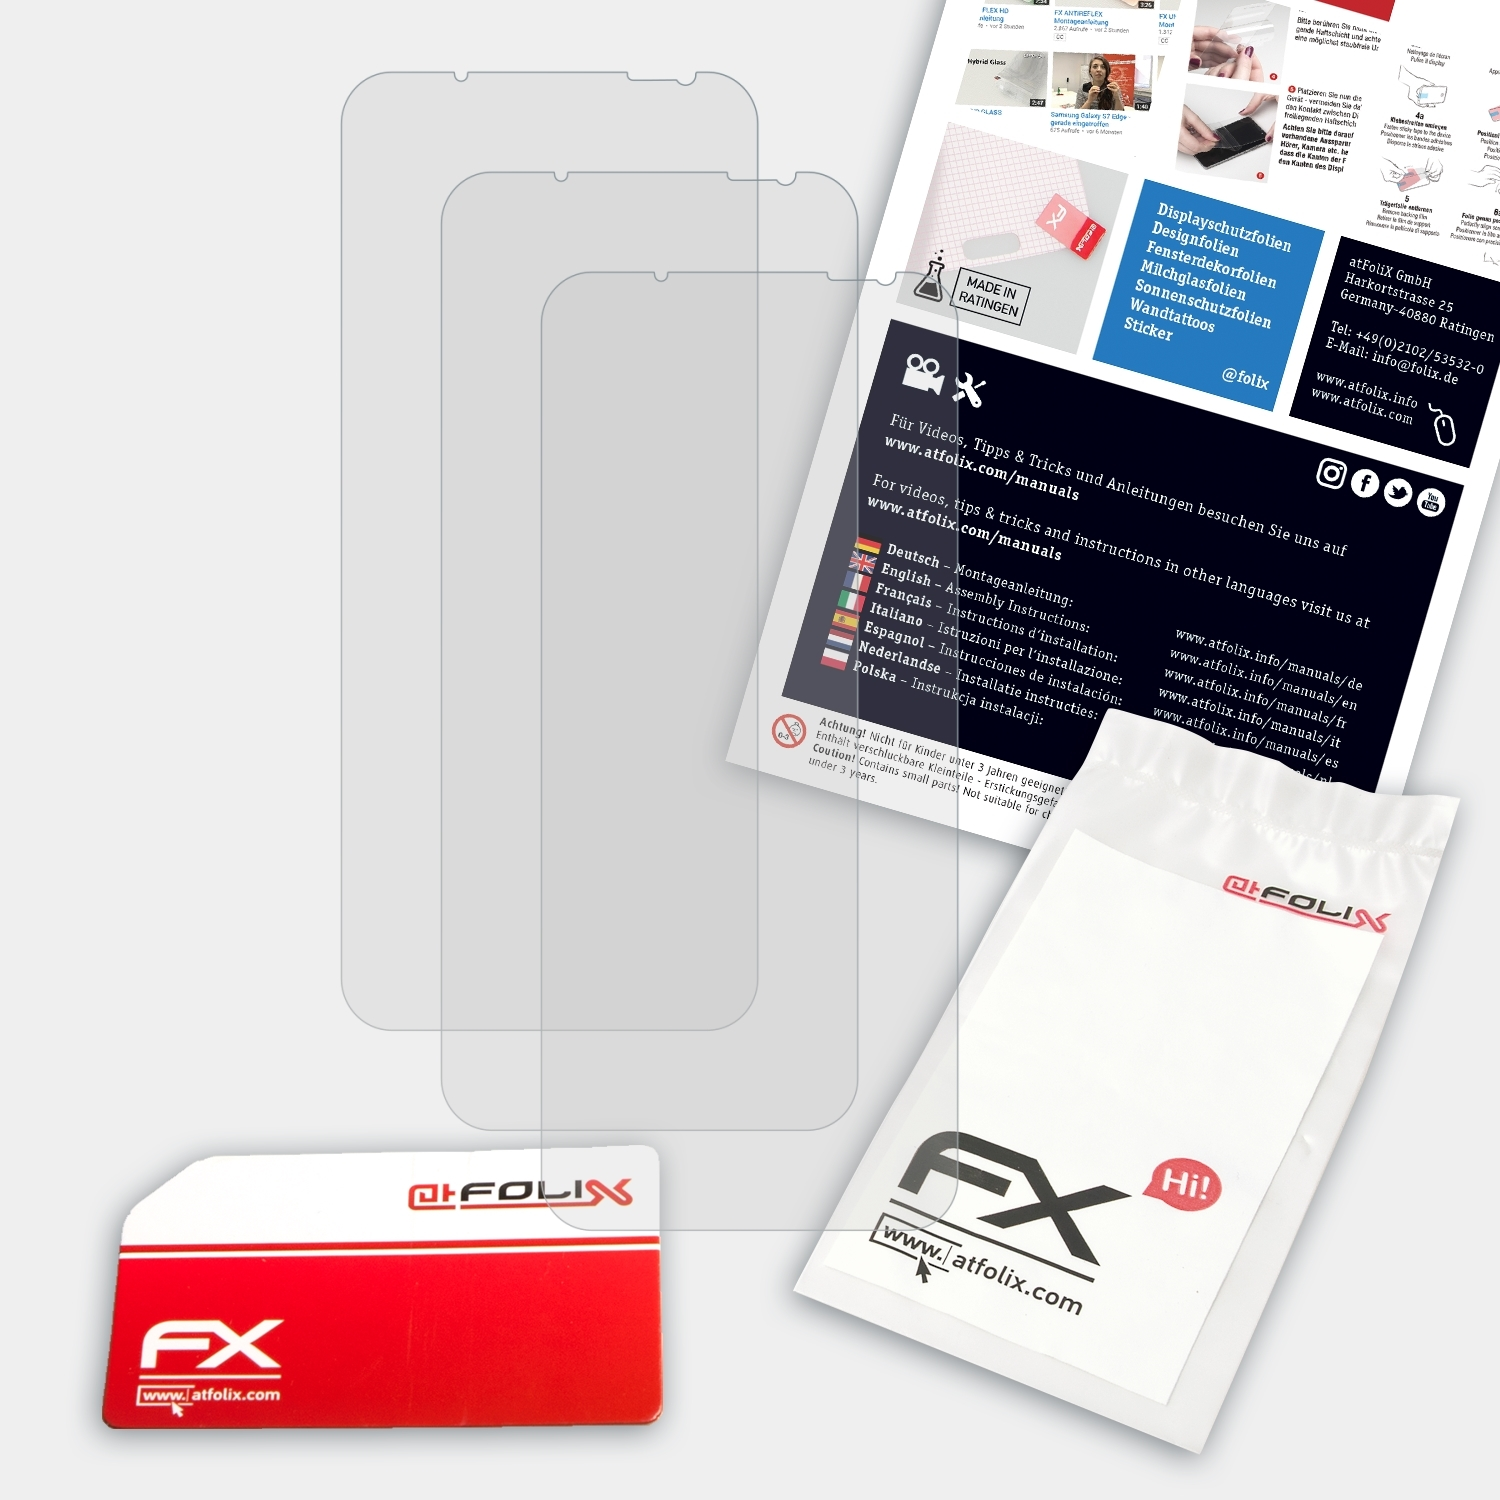 FX-Antireflex ATFOLIX Magic Red Nubia 3x Pro) 6 Displayschutz(für